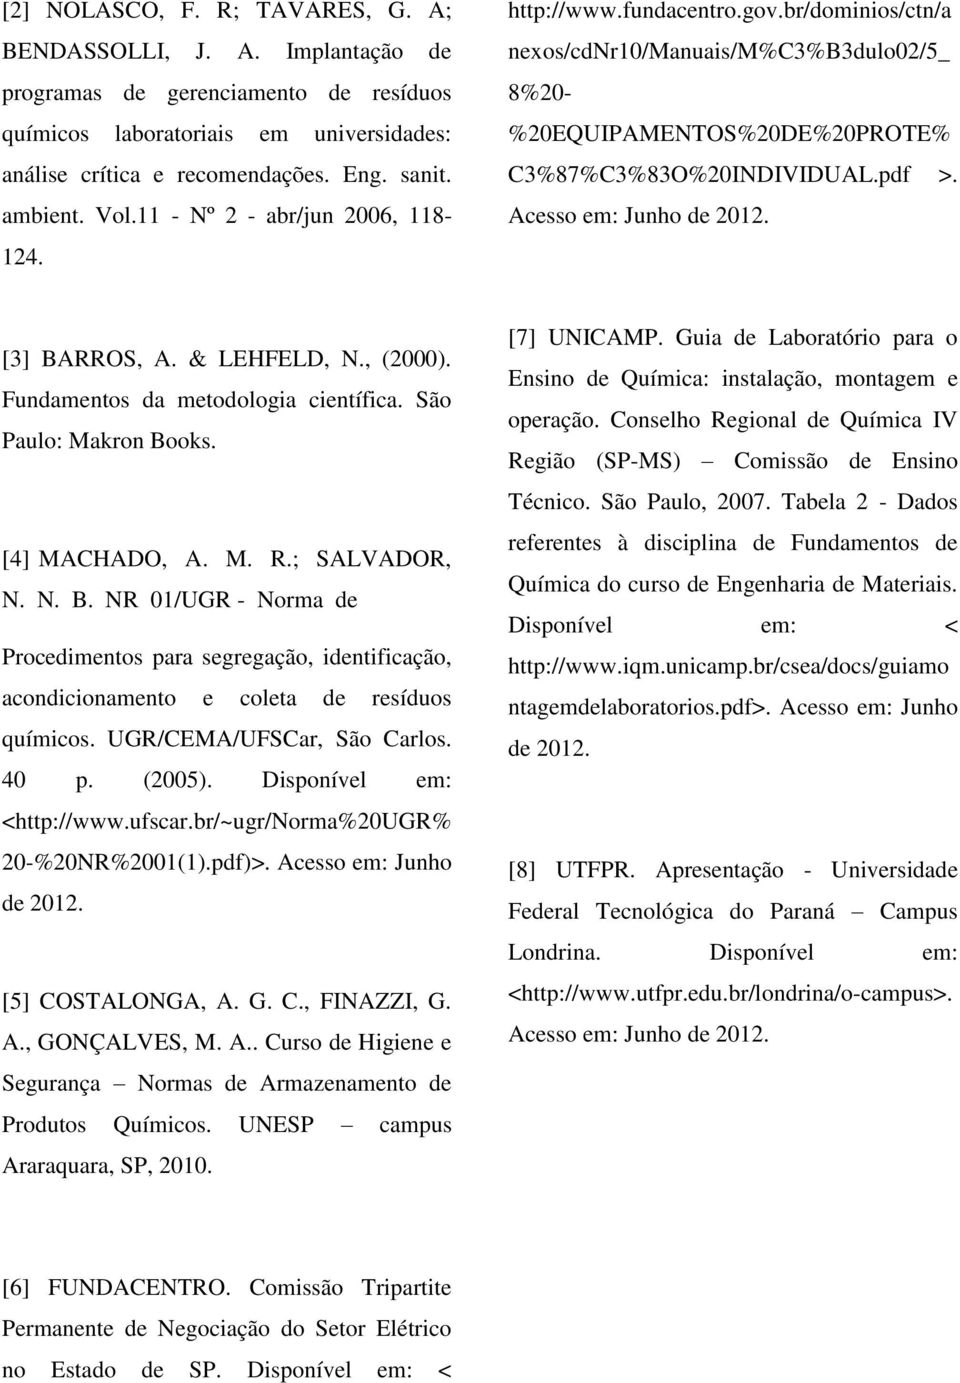 Acesso em: Junho de 2012. [3] BARROS, A. & LEHFELD, N., (2000). Fundamentos da metodologia científica. São Paulo: Makron Books. [4] MACHADO, A. M. R.; SALVADOR, N. N. B. NR 01/UGR - Norma de Procedimentos para segregação, identificação, acondicionamento e coleta de resíduos químicos.